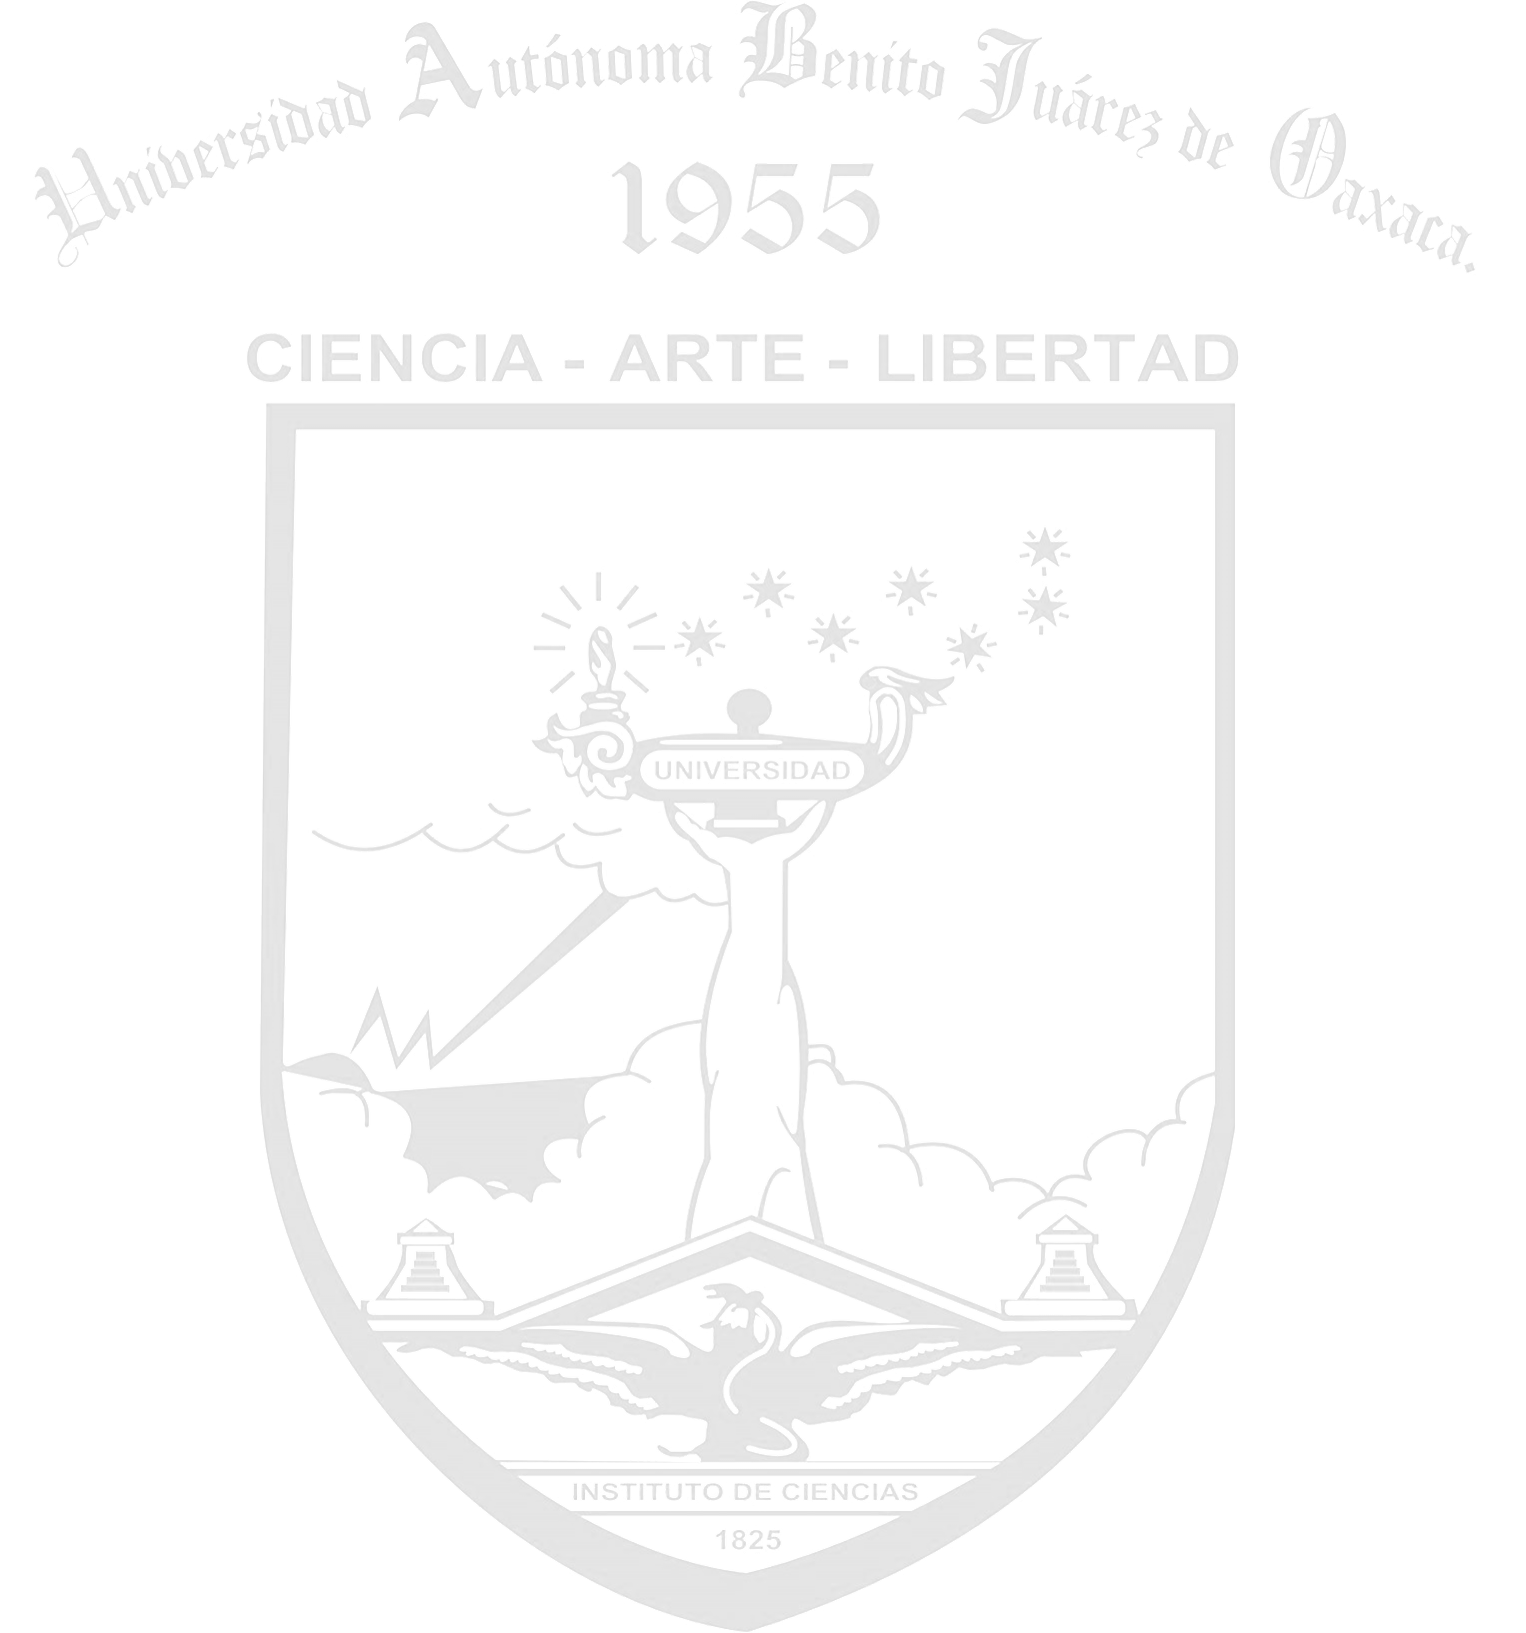 Universidad Autonoma de Guadalajara Logo photo - 1